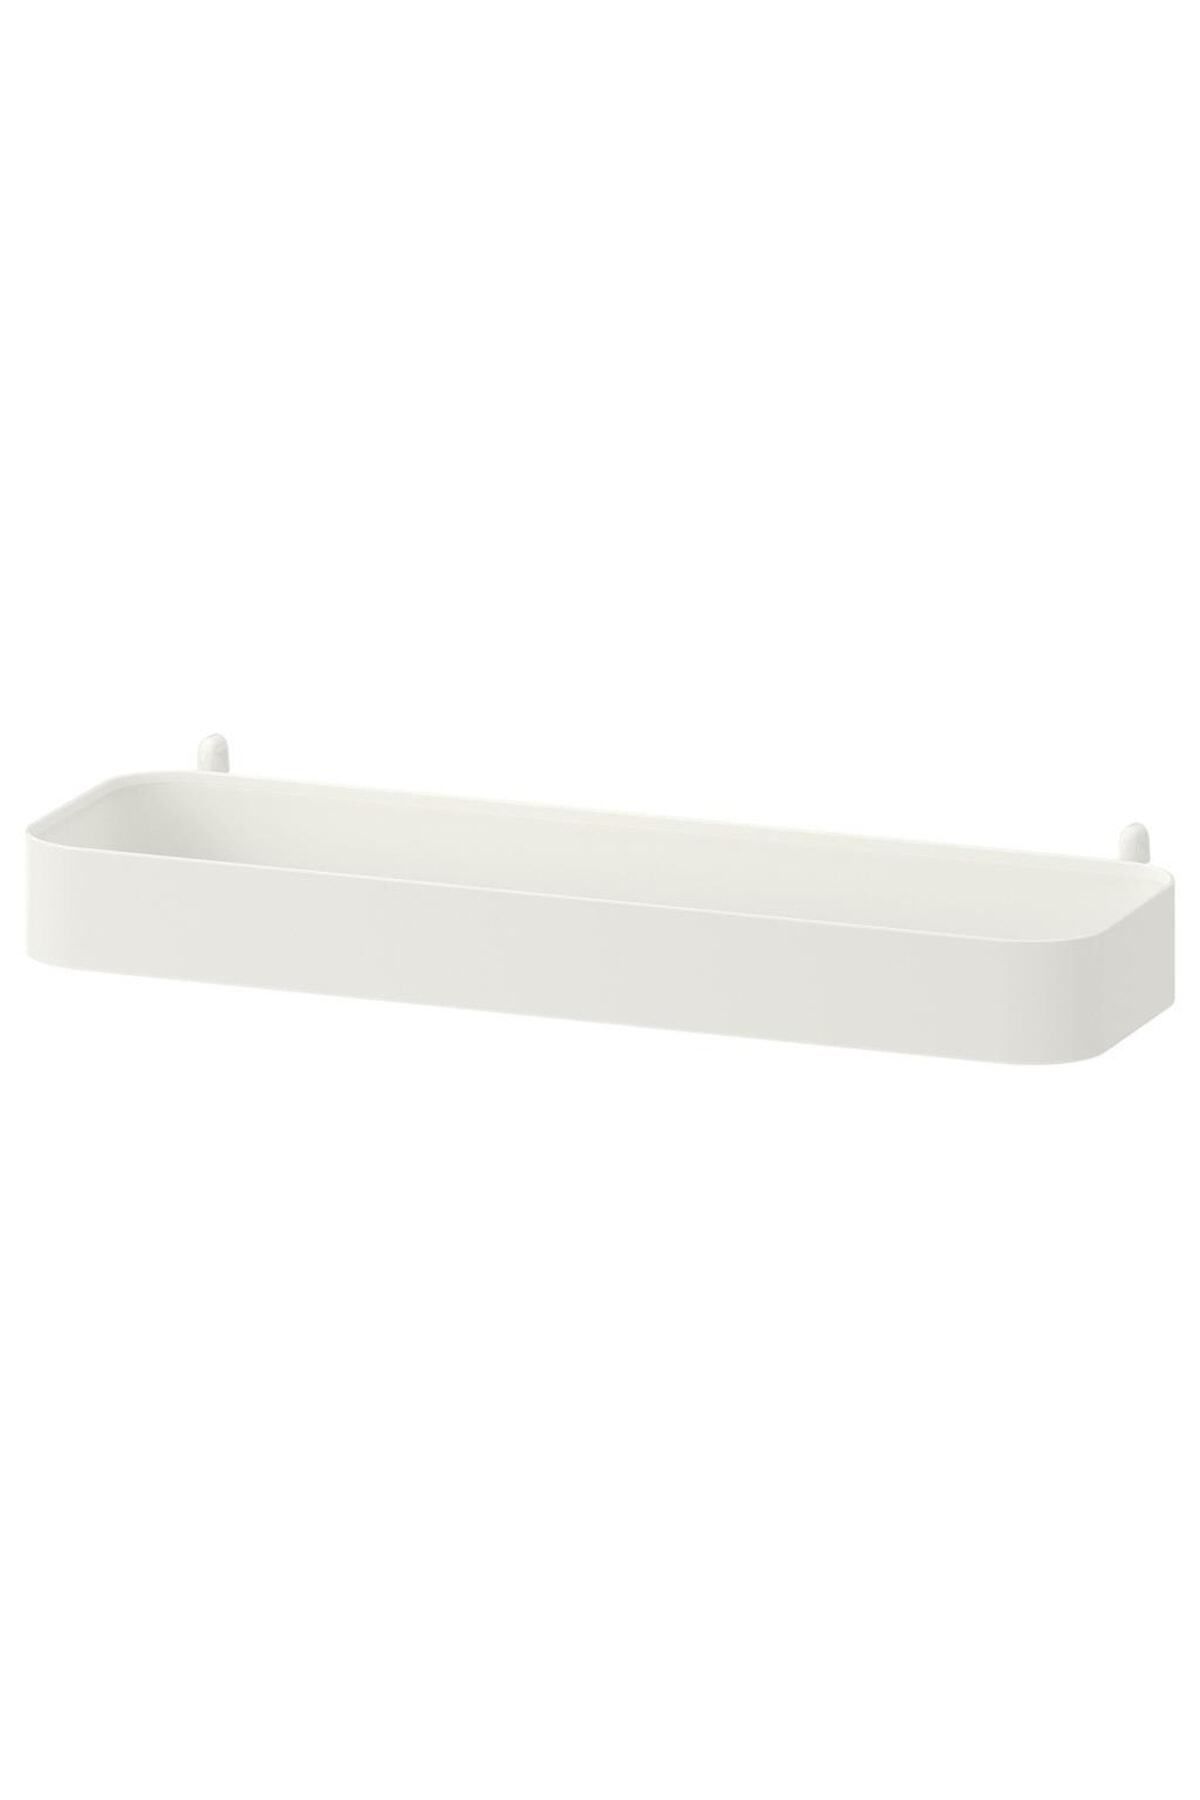 IKEA Skadıs Çok Amaçlı Pano Parçası Çelik Raf Genişlik: 28 cm Derinlik: 9 cm Yükseklik: 3 cm